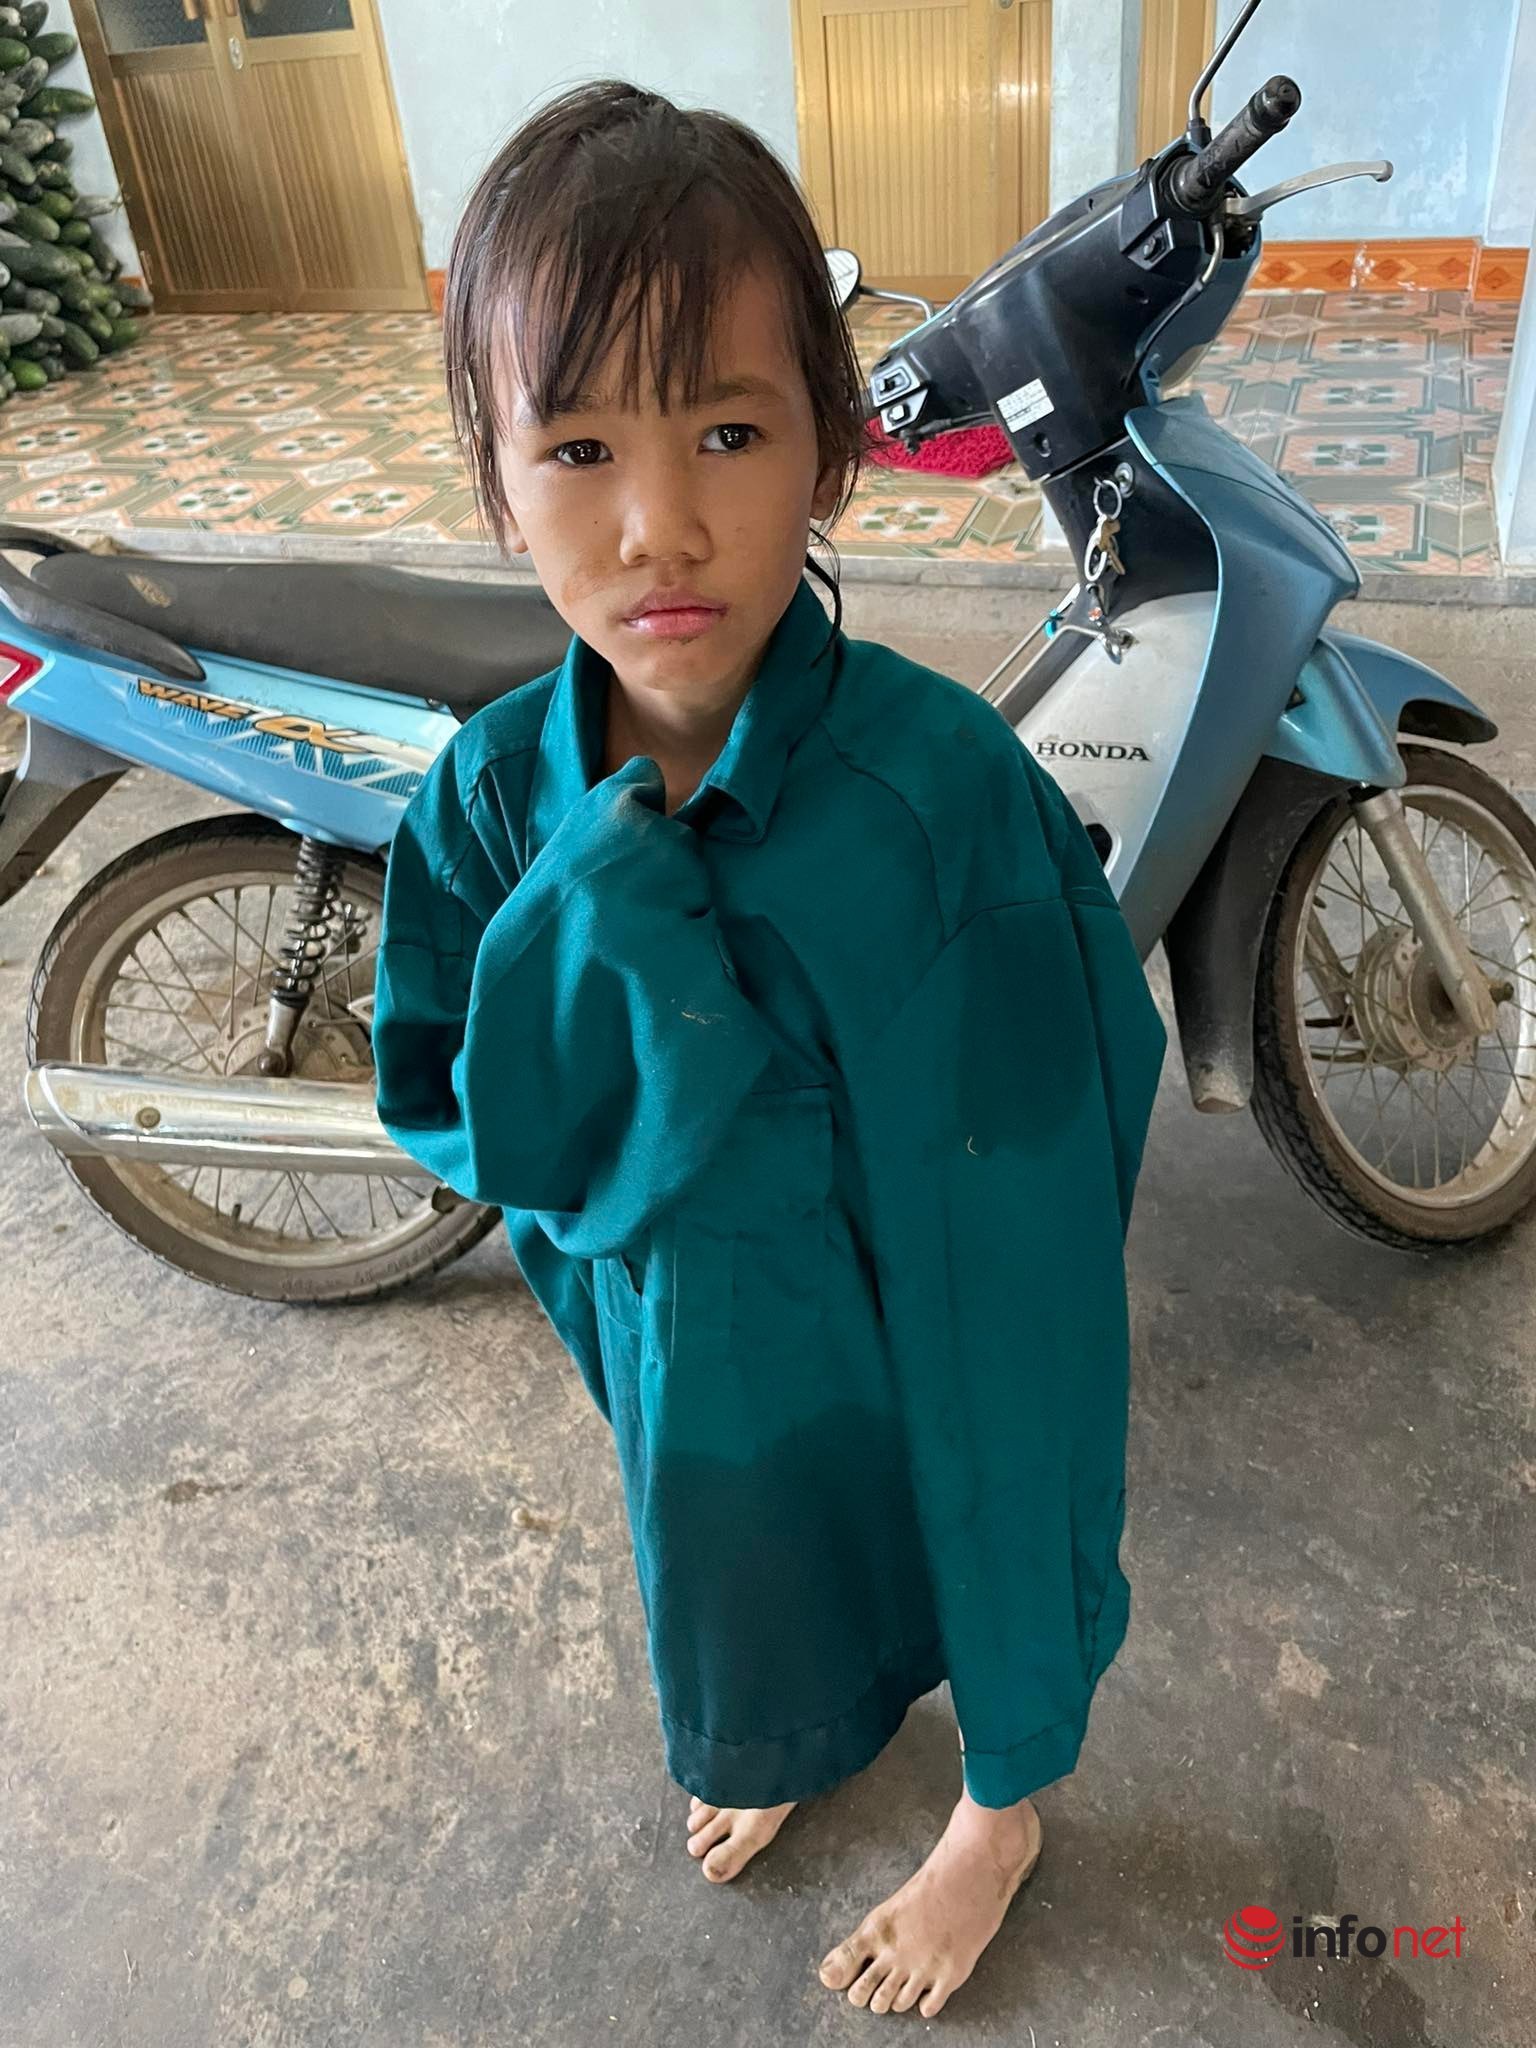 Bất ngờ danh tính 'người hùng' nhảy xuống sông cứu bé gái lớp 4 ngâm nước cả tiếng đồng hồ ở Thái Nguyên